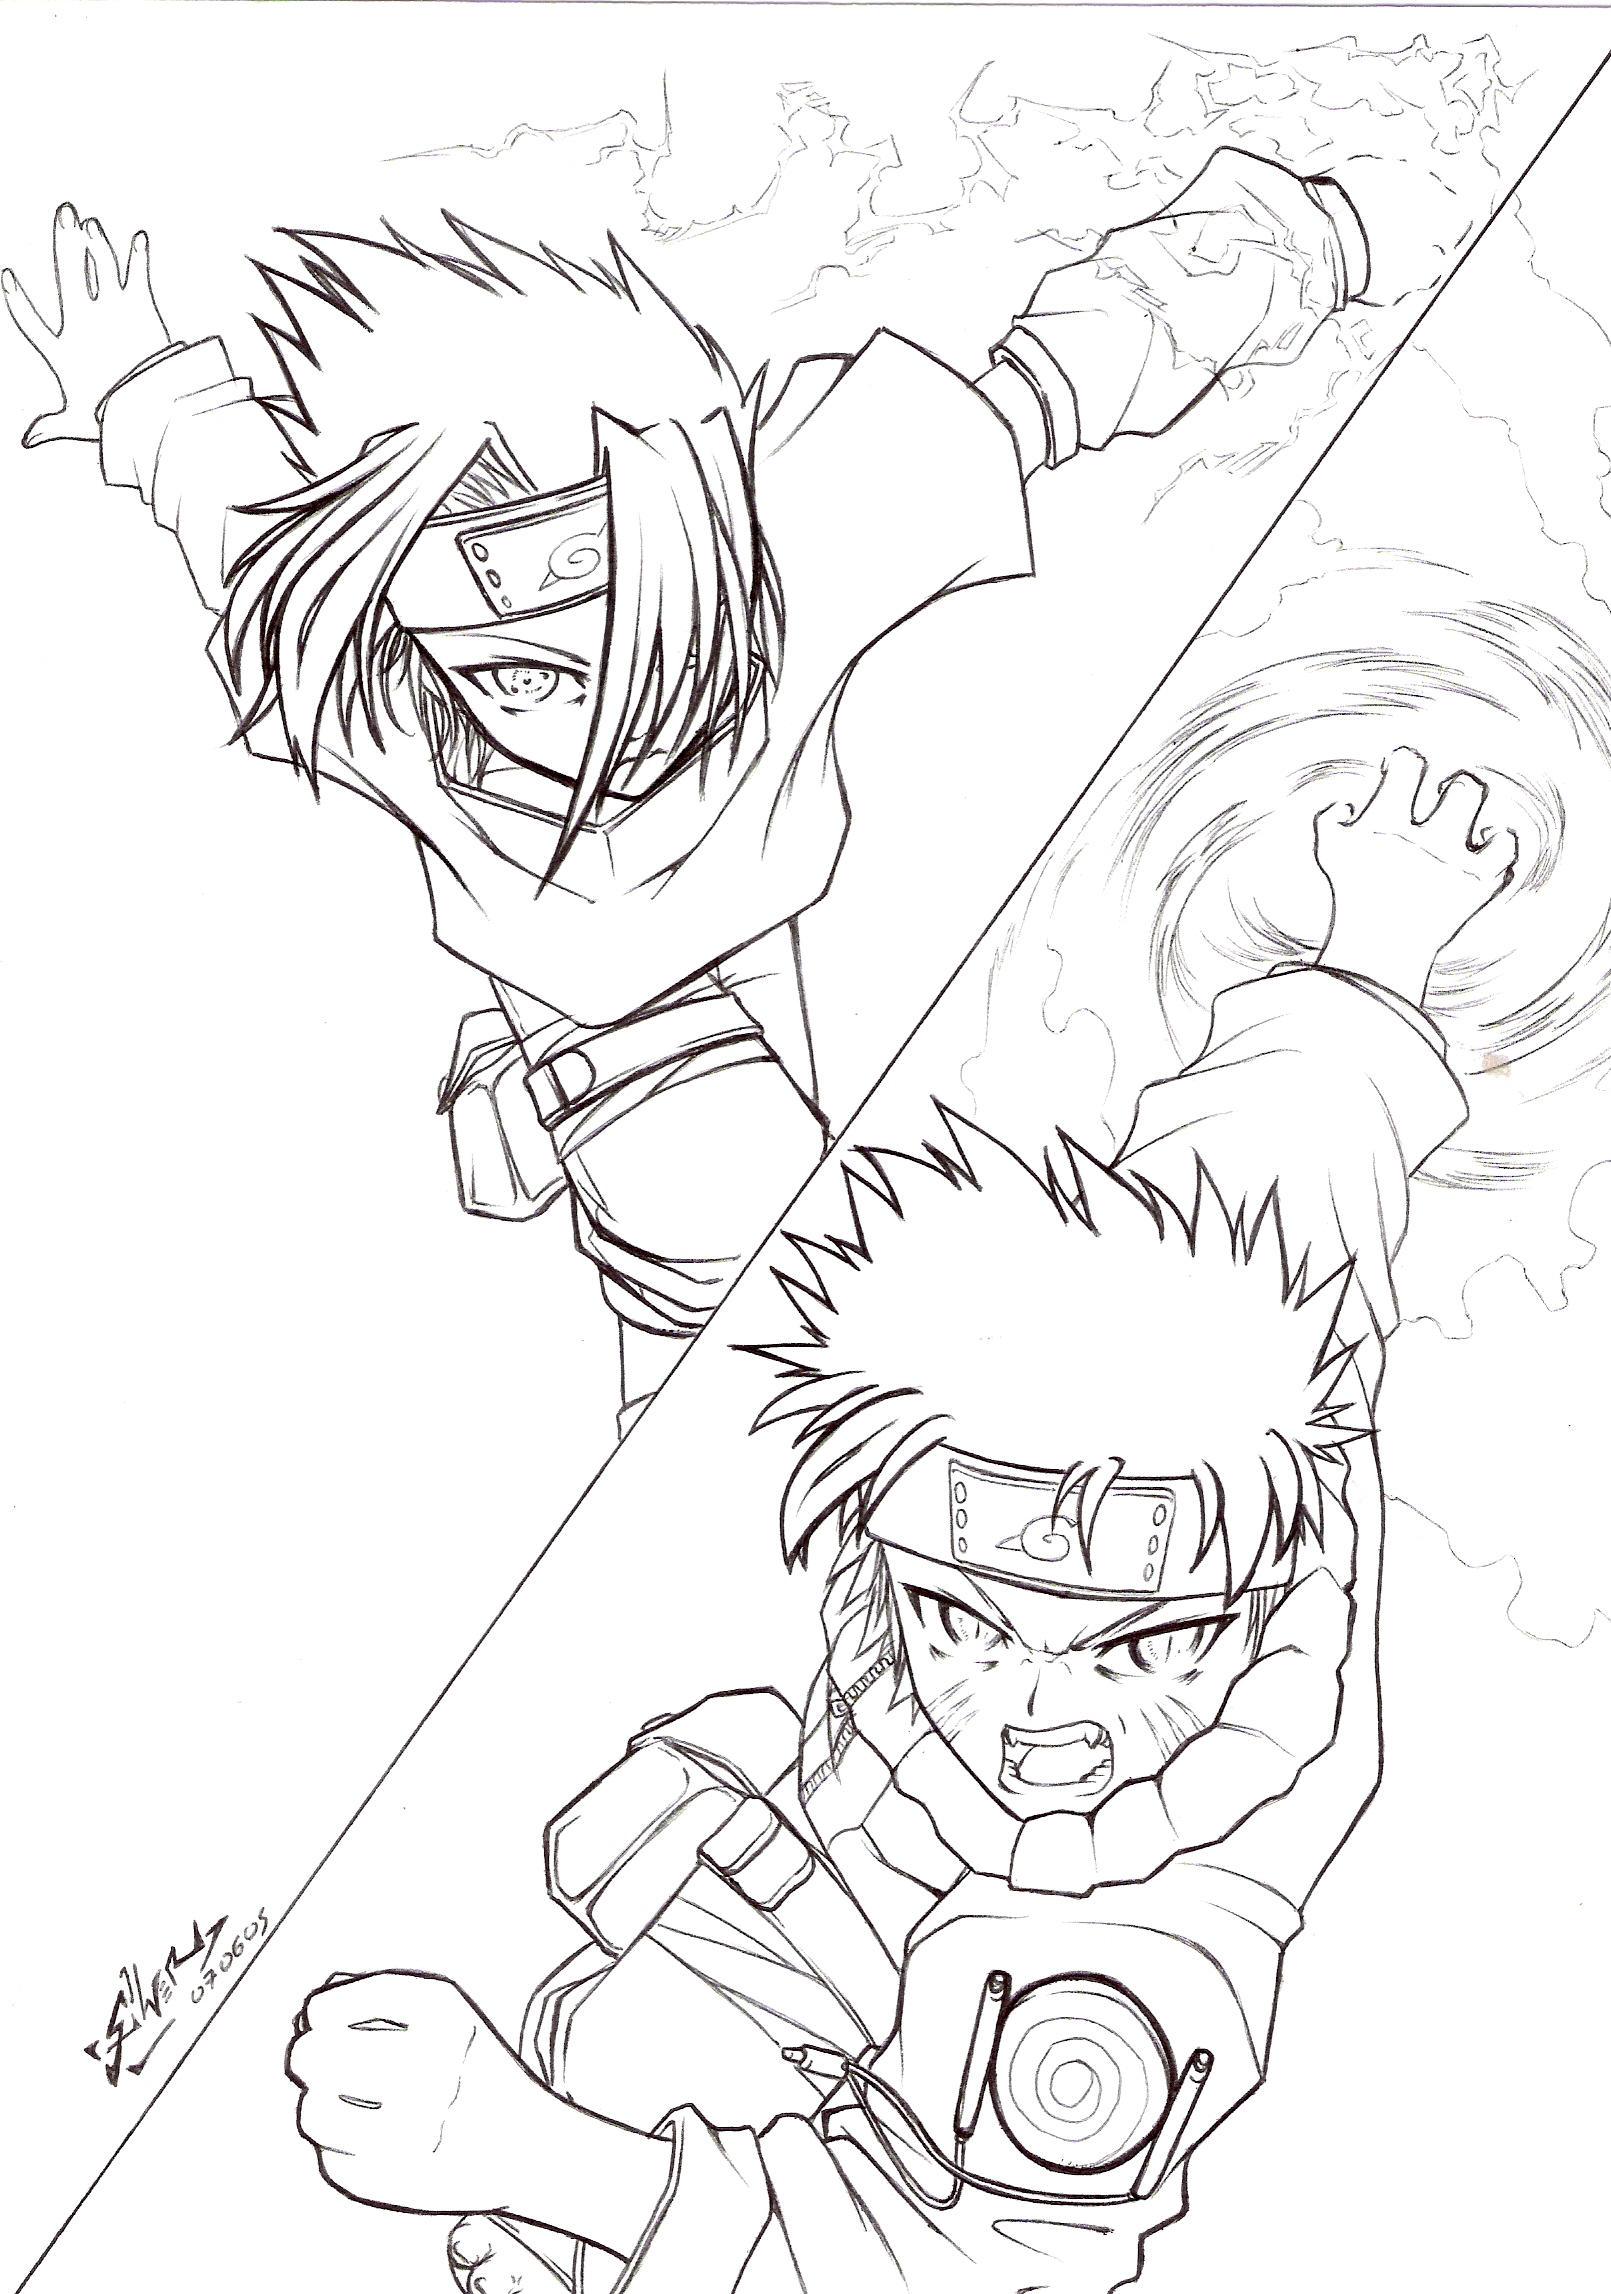 Naruto rasengan vs sasuke chidori coloring pages